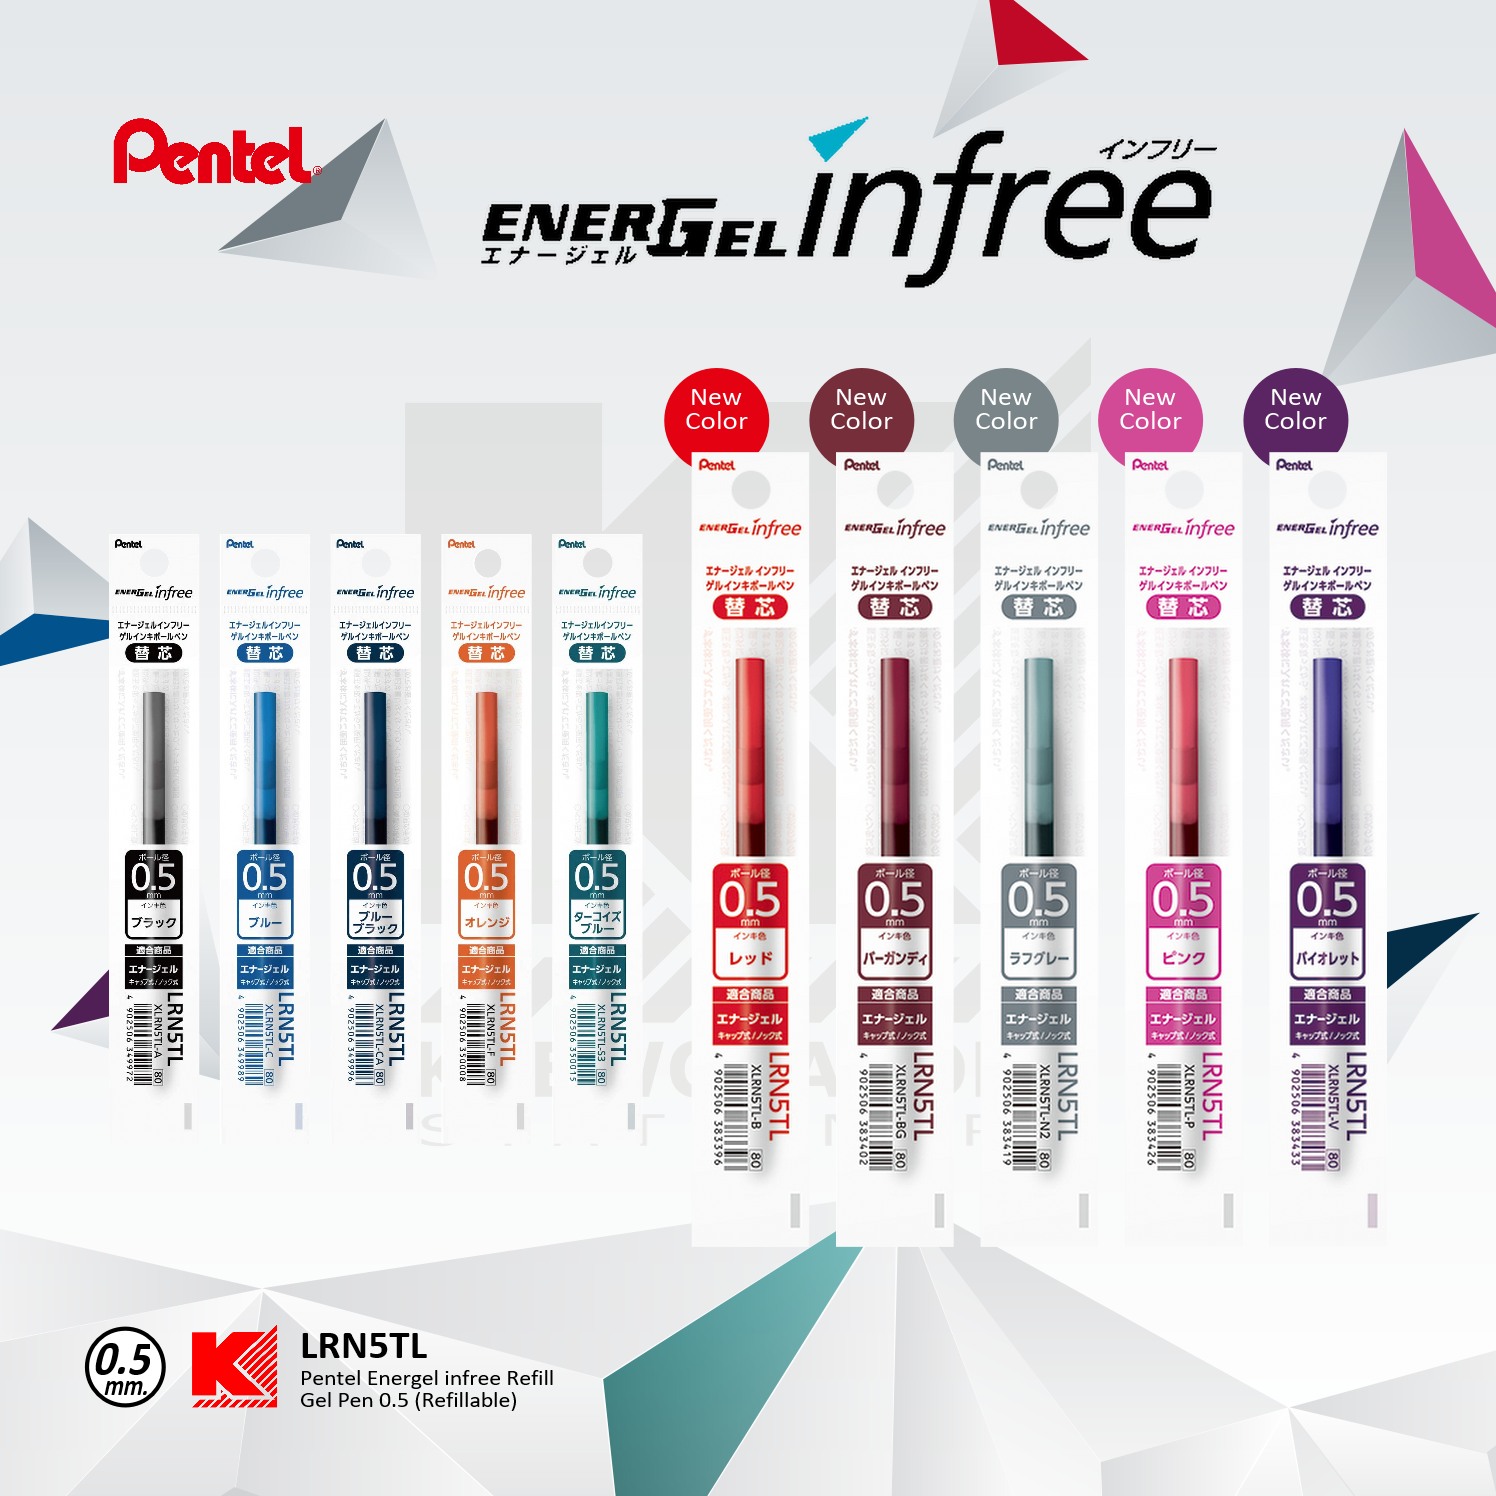 ไส้ปากกาเจล Pentel EnerGel infree LRN5TL ขนาด 0.5 มม. มี 10 สี (สีใหม่ 5 สี)